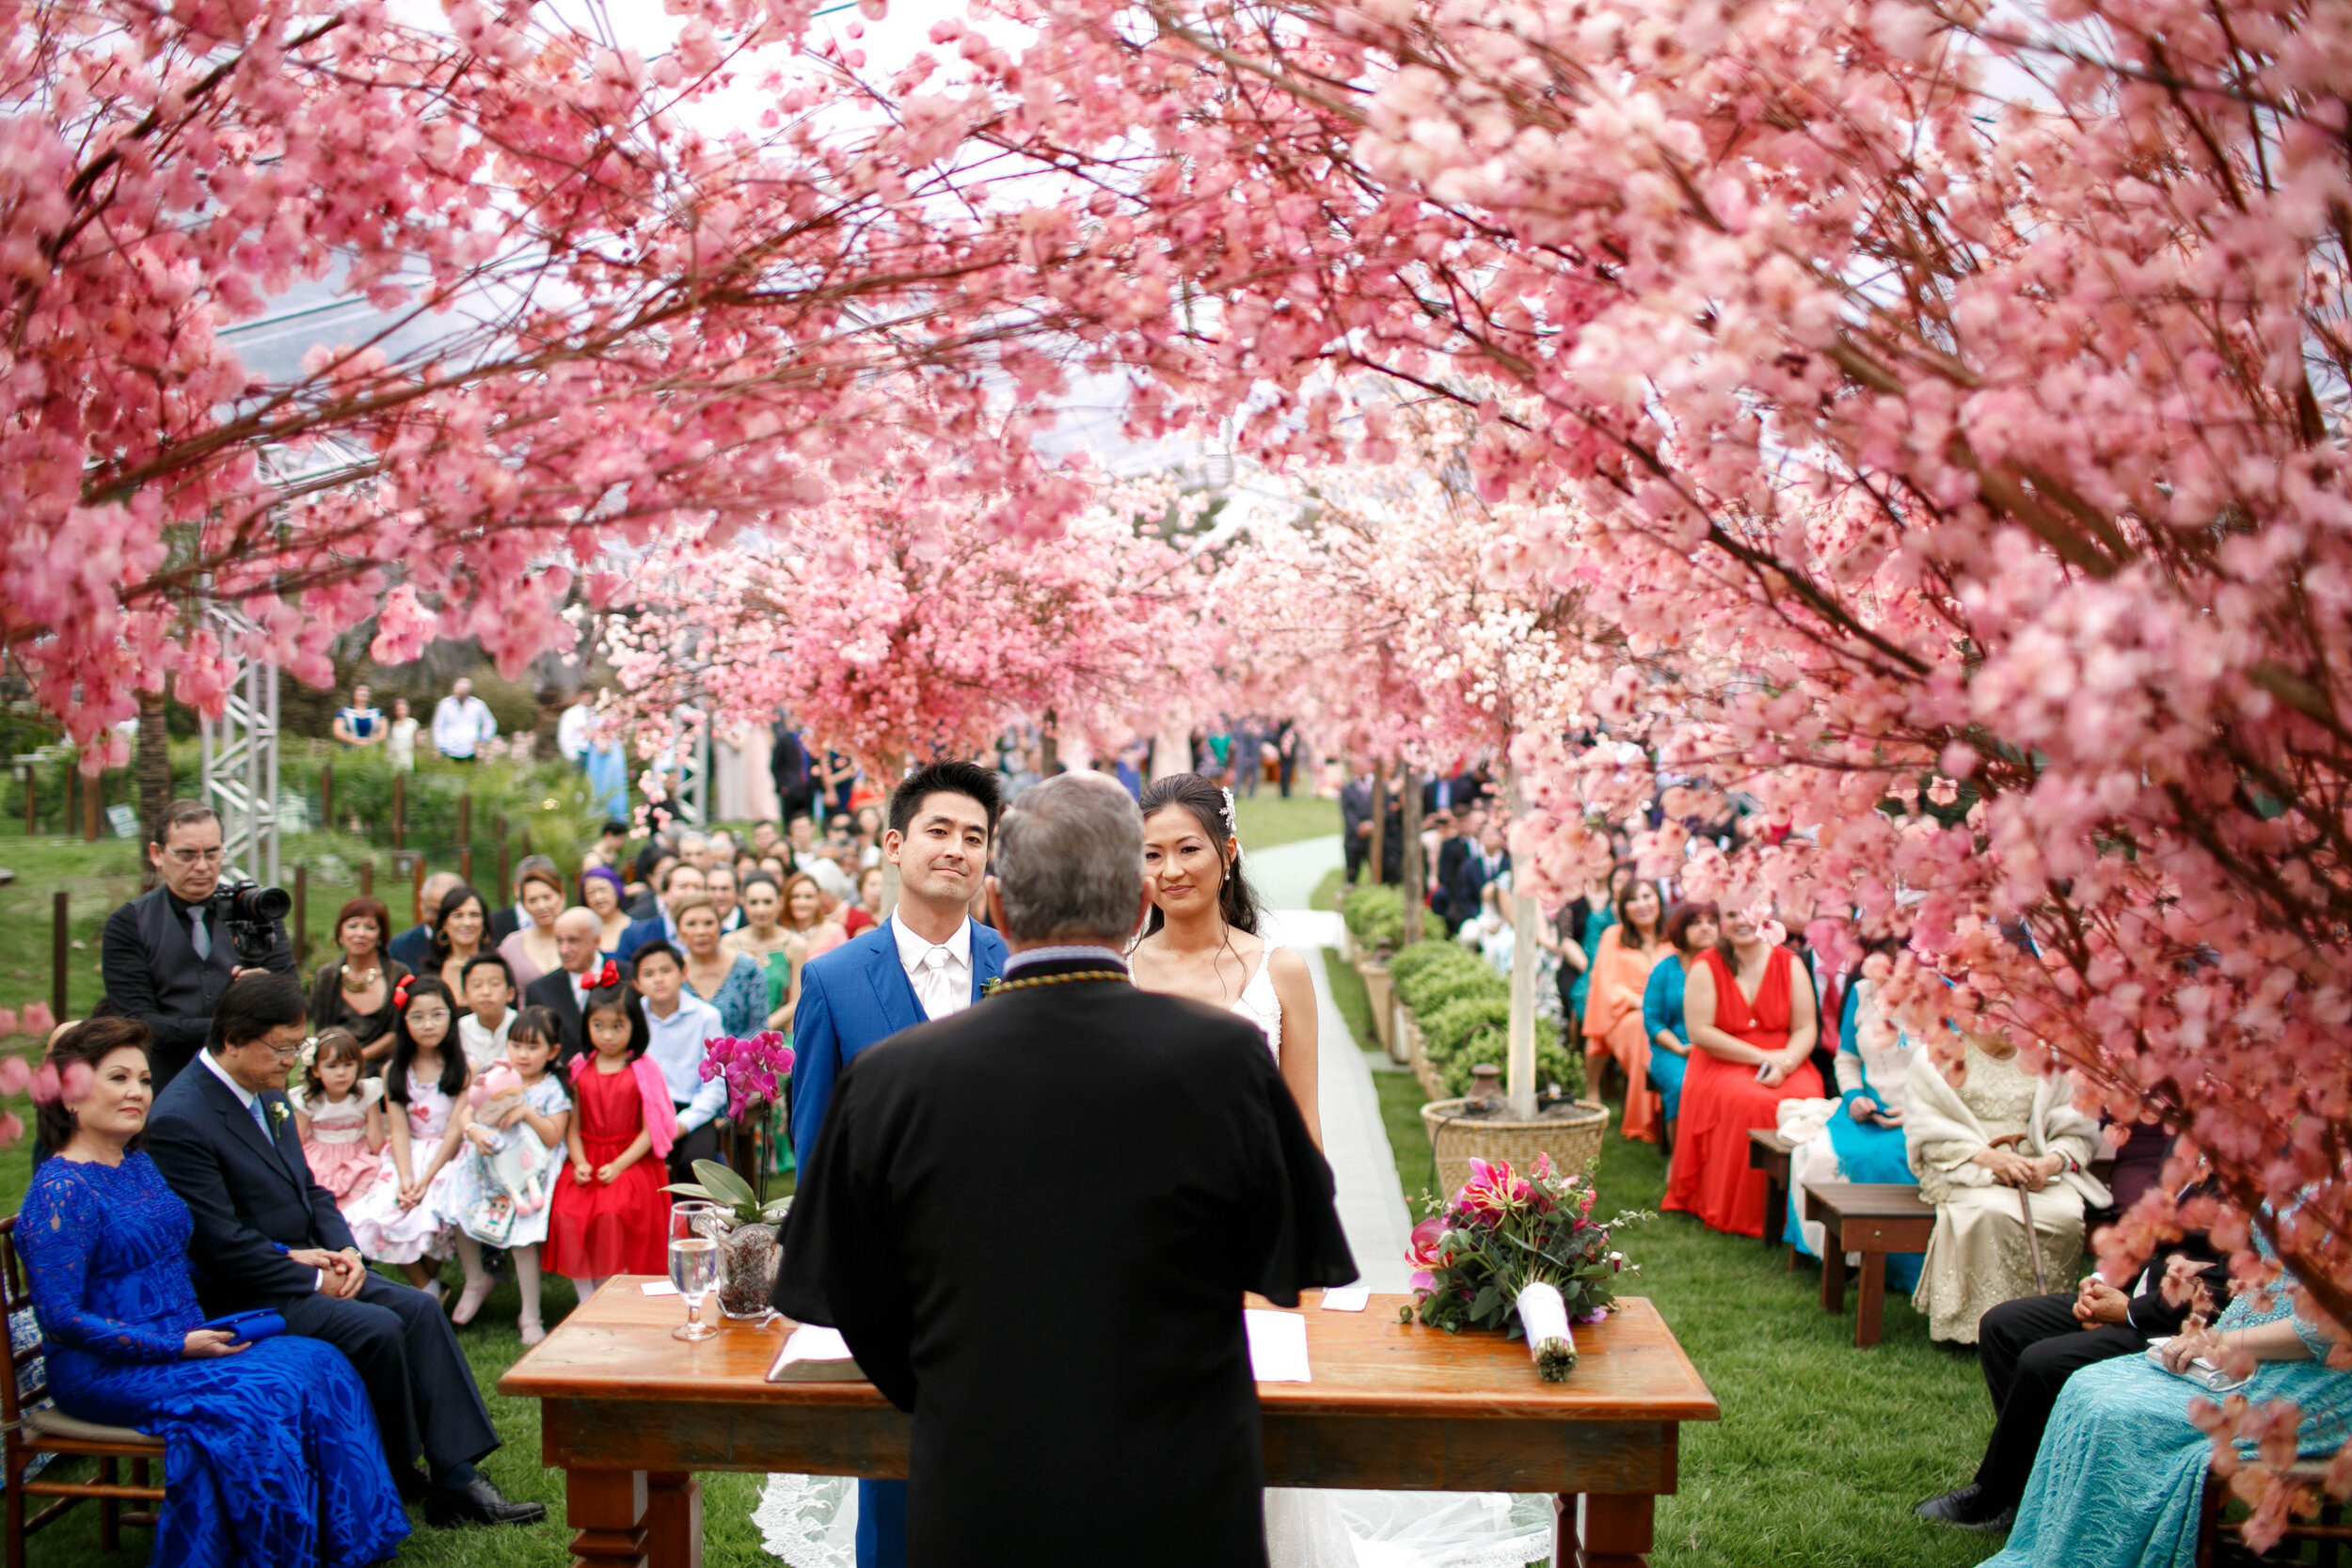 Cheng NV fotografo de casamento em Curitiba- Melhor fotografia do brasil - MIni casamento - Inspiração de decoração - 2020 - noiva - inesquecivel casamento_.29.jpg